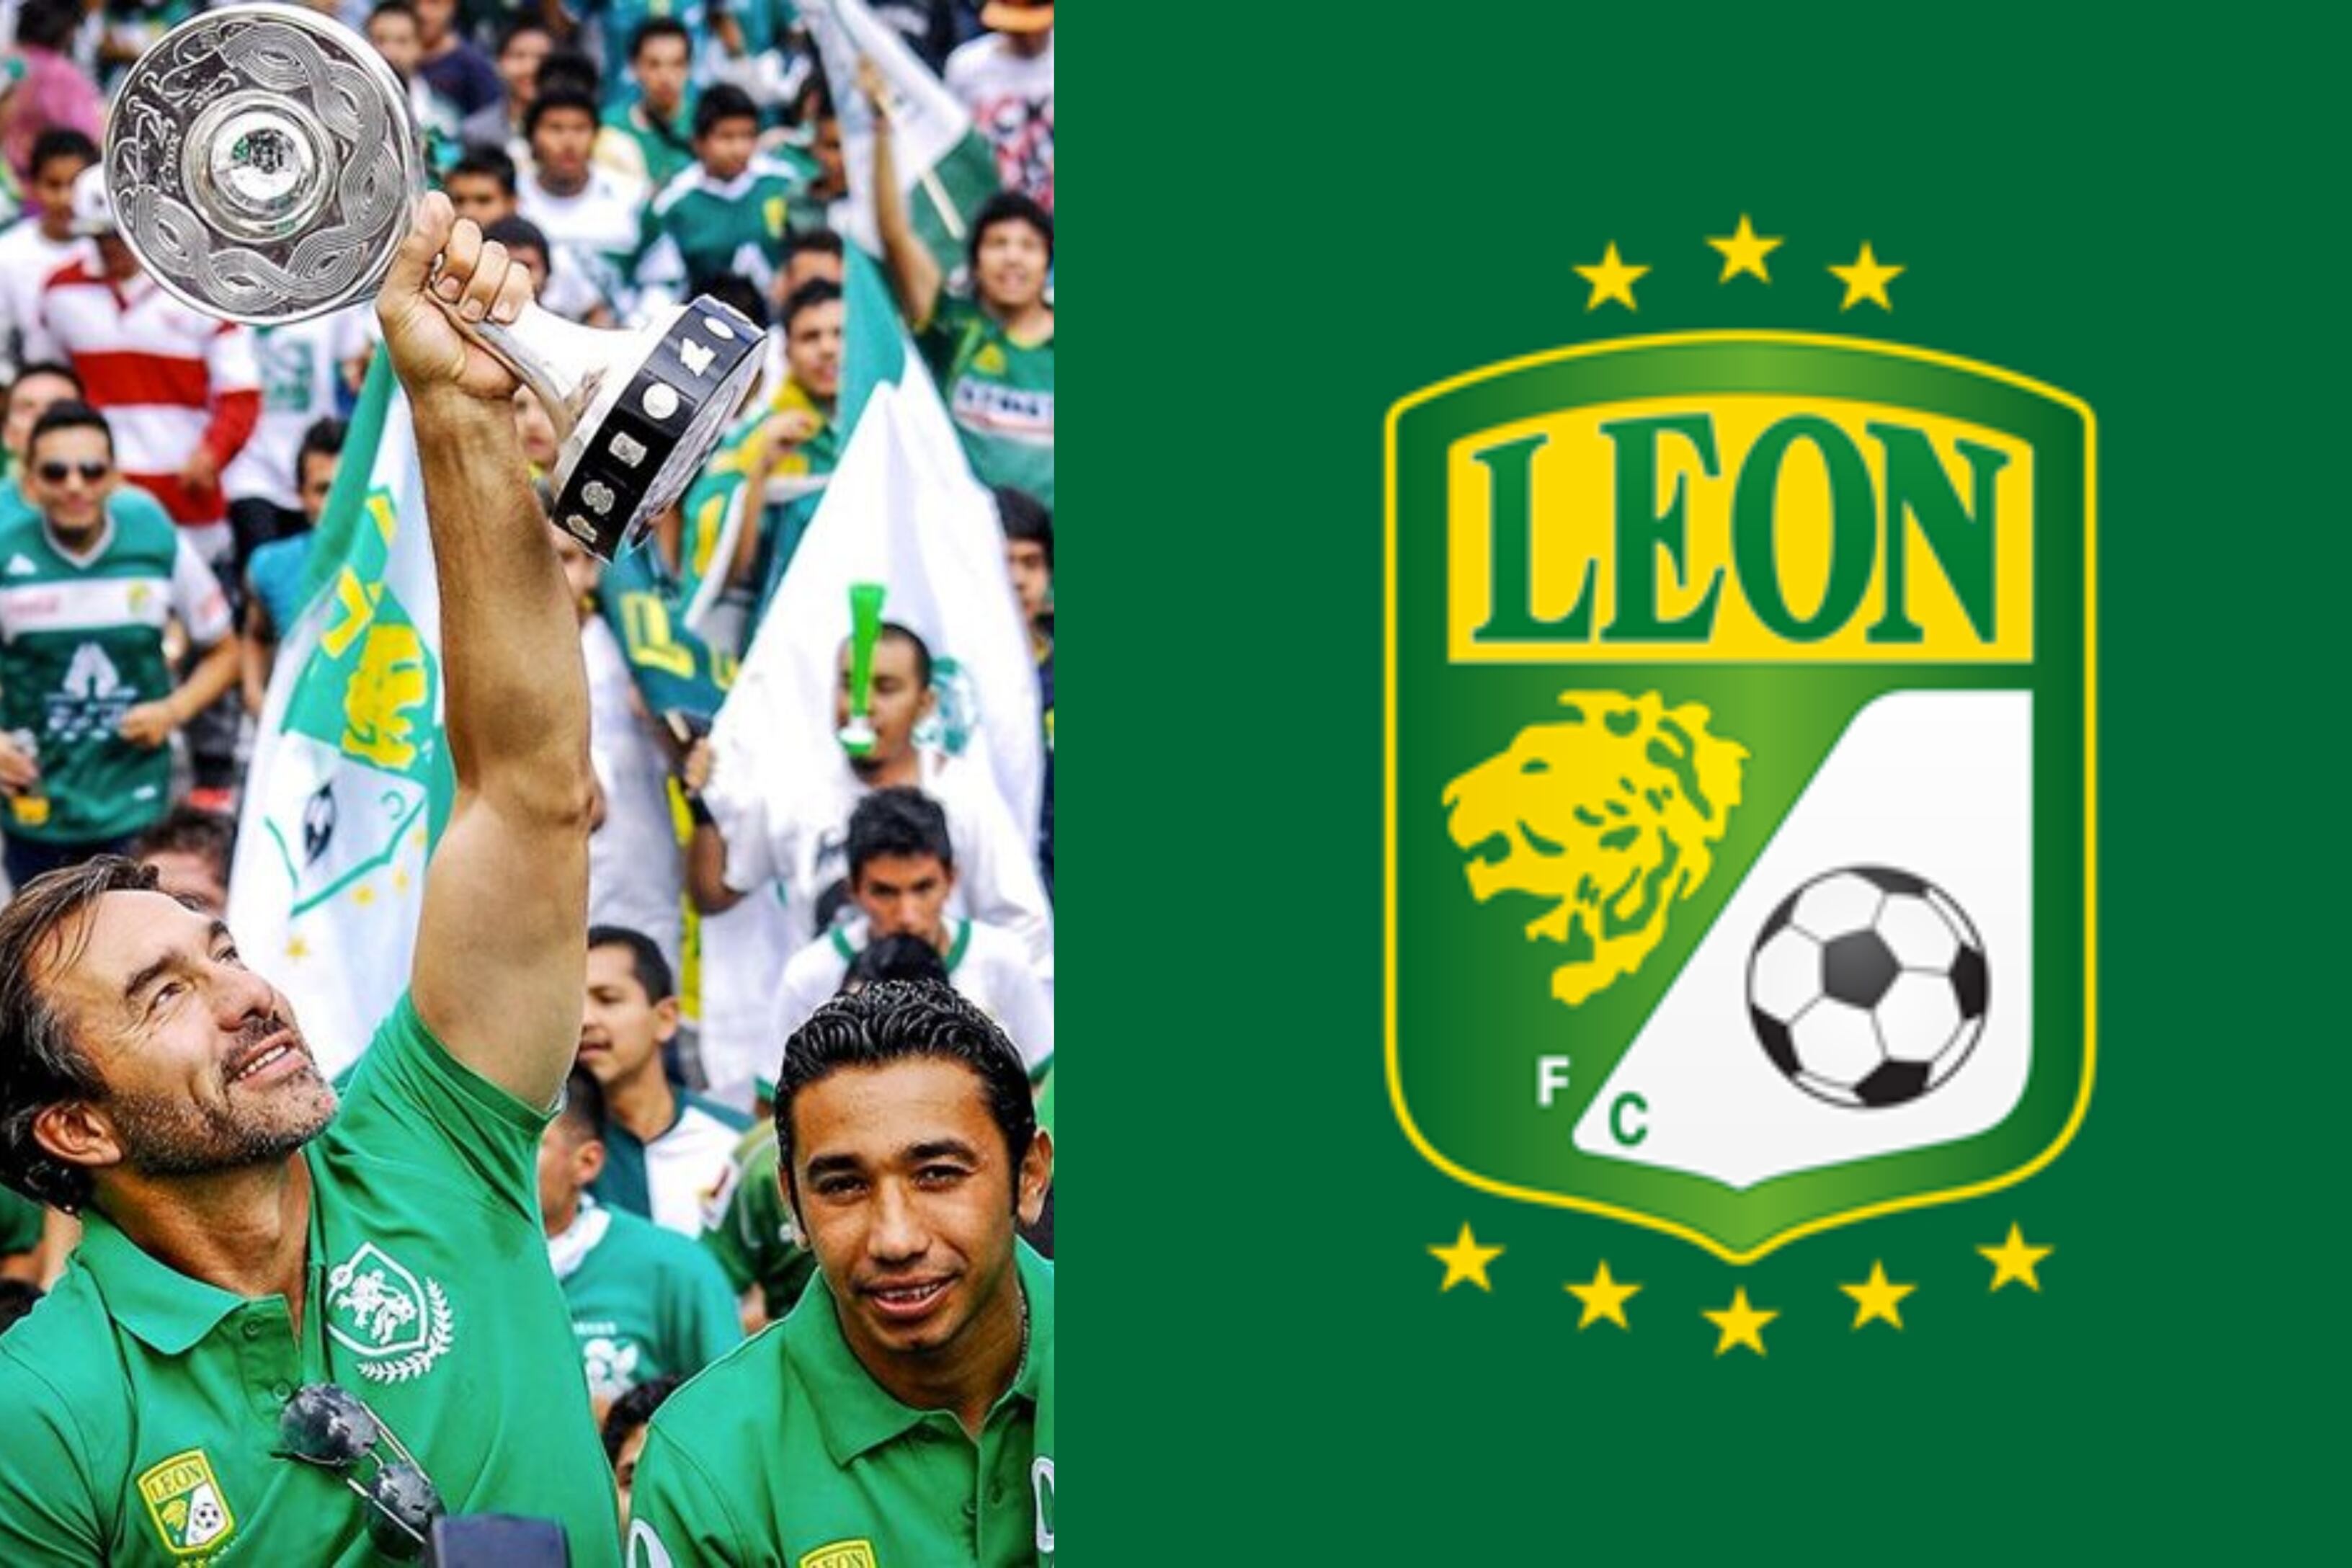 De esta forma, León celebrará sus 10 años de Ascenso a primera división